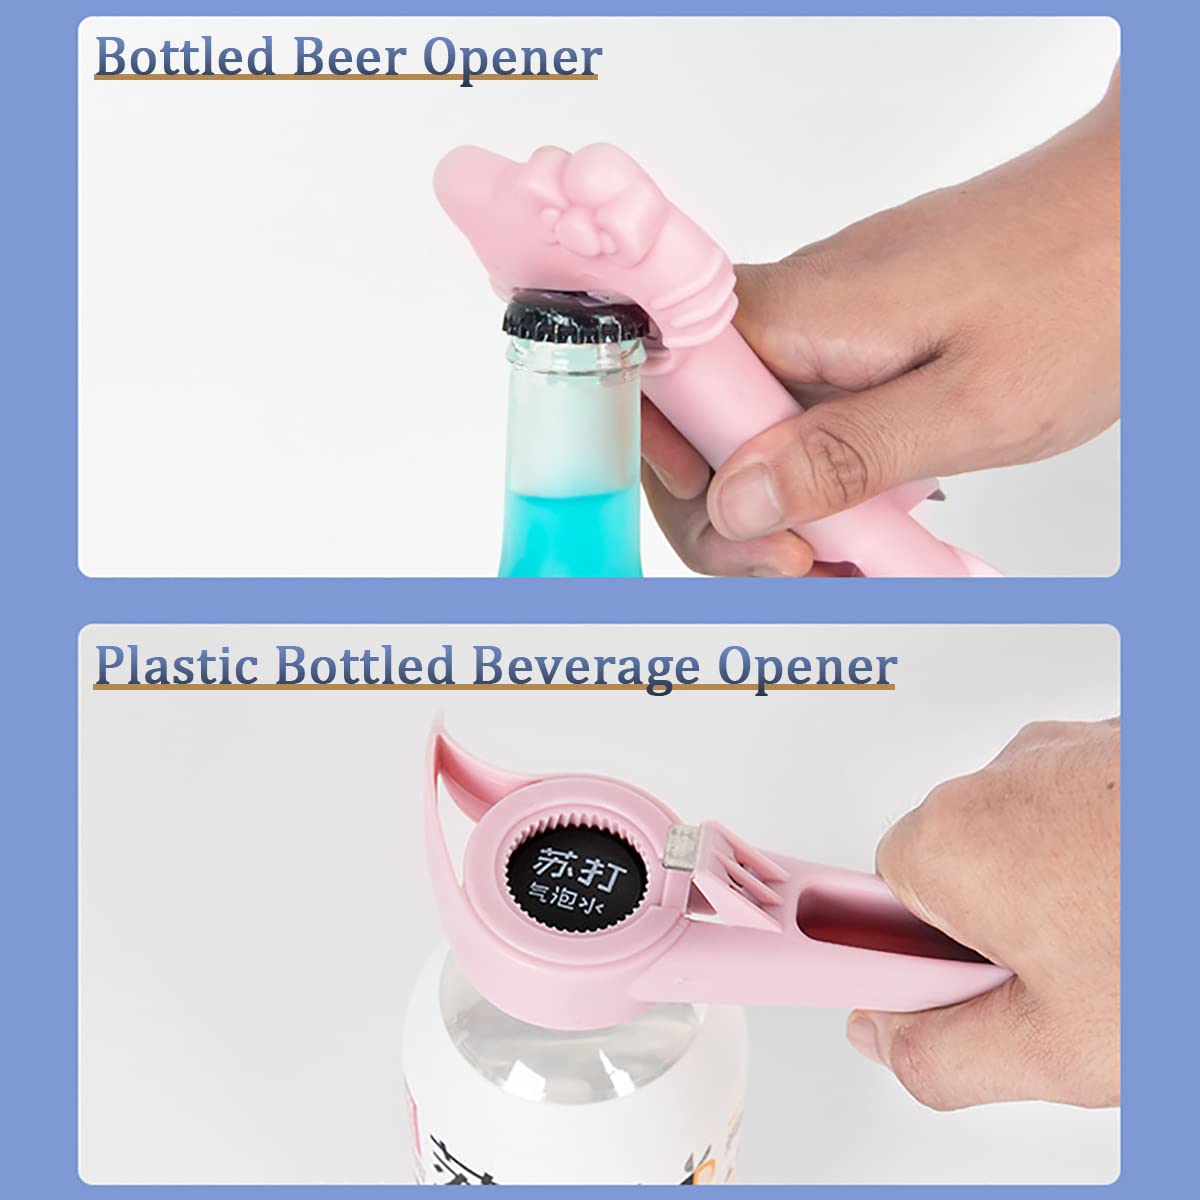 𝟰 𝗶𝗻 𝟭 𝗕𝗼𝘁𝘁𝗹𝗲 𝗢𝗽𝗲𝗻𝗲𝗿 Beer Opener Can Opener 𝟮 𝗣𝗖𝗦 𝗠𝘂𝗹𝘁𝗶𝗳𝘂𝗻𝗰𝘁𝗶𝗼𝗻 𝗝𝗮𝗿 𝗢𝗽𝗲𝗻𝗲𝗿 Kitchen Gadget Bar Tools Cap Opener Juice Lid Opener